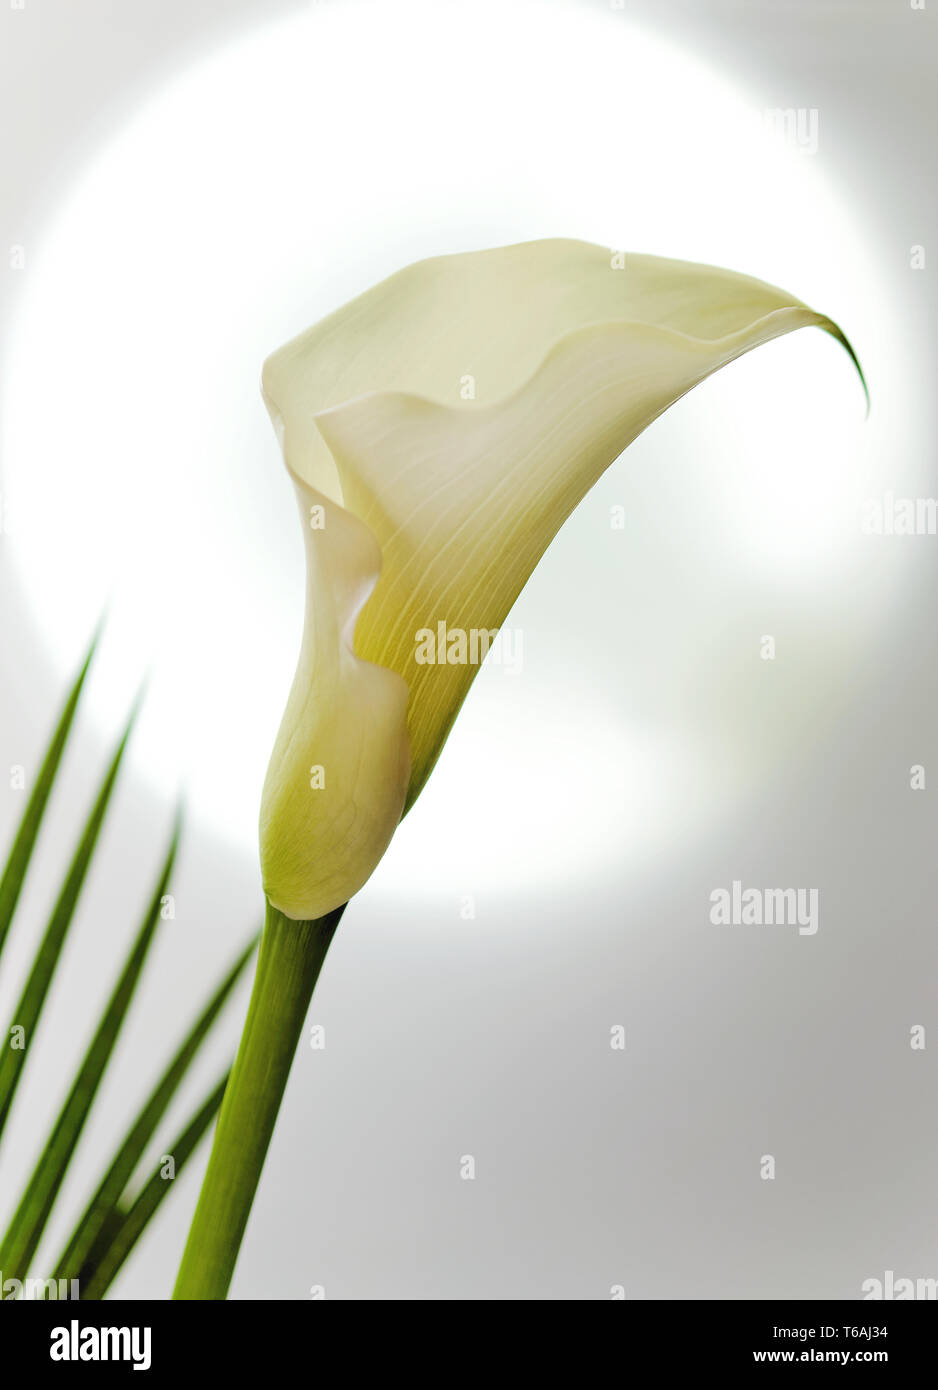 Blossom of a white calla lily (Zantedeschia) Stock Photo